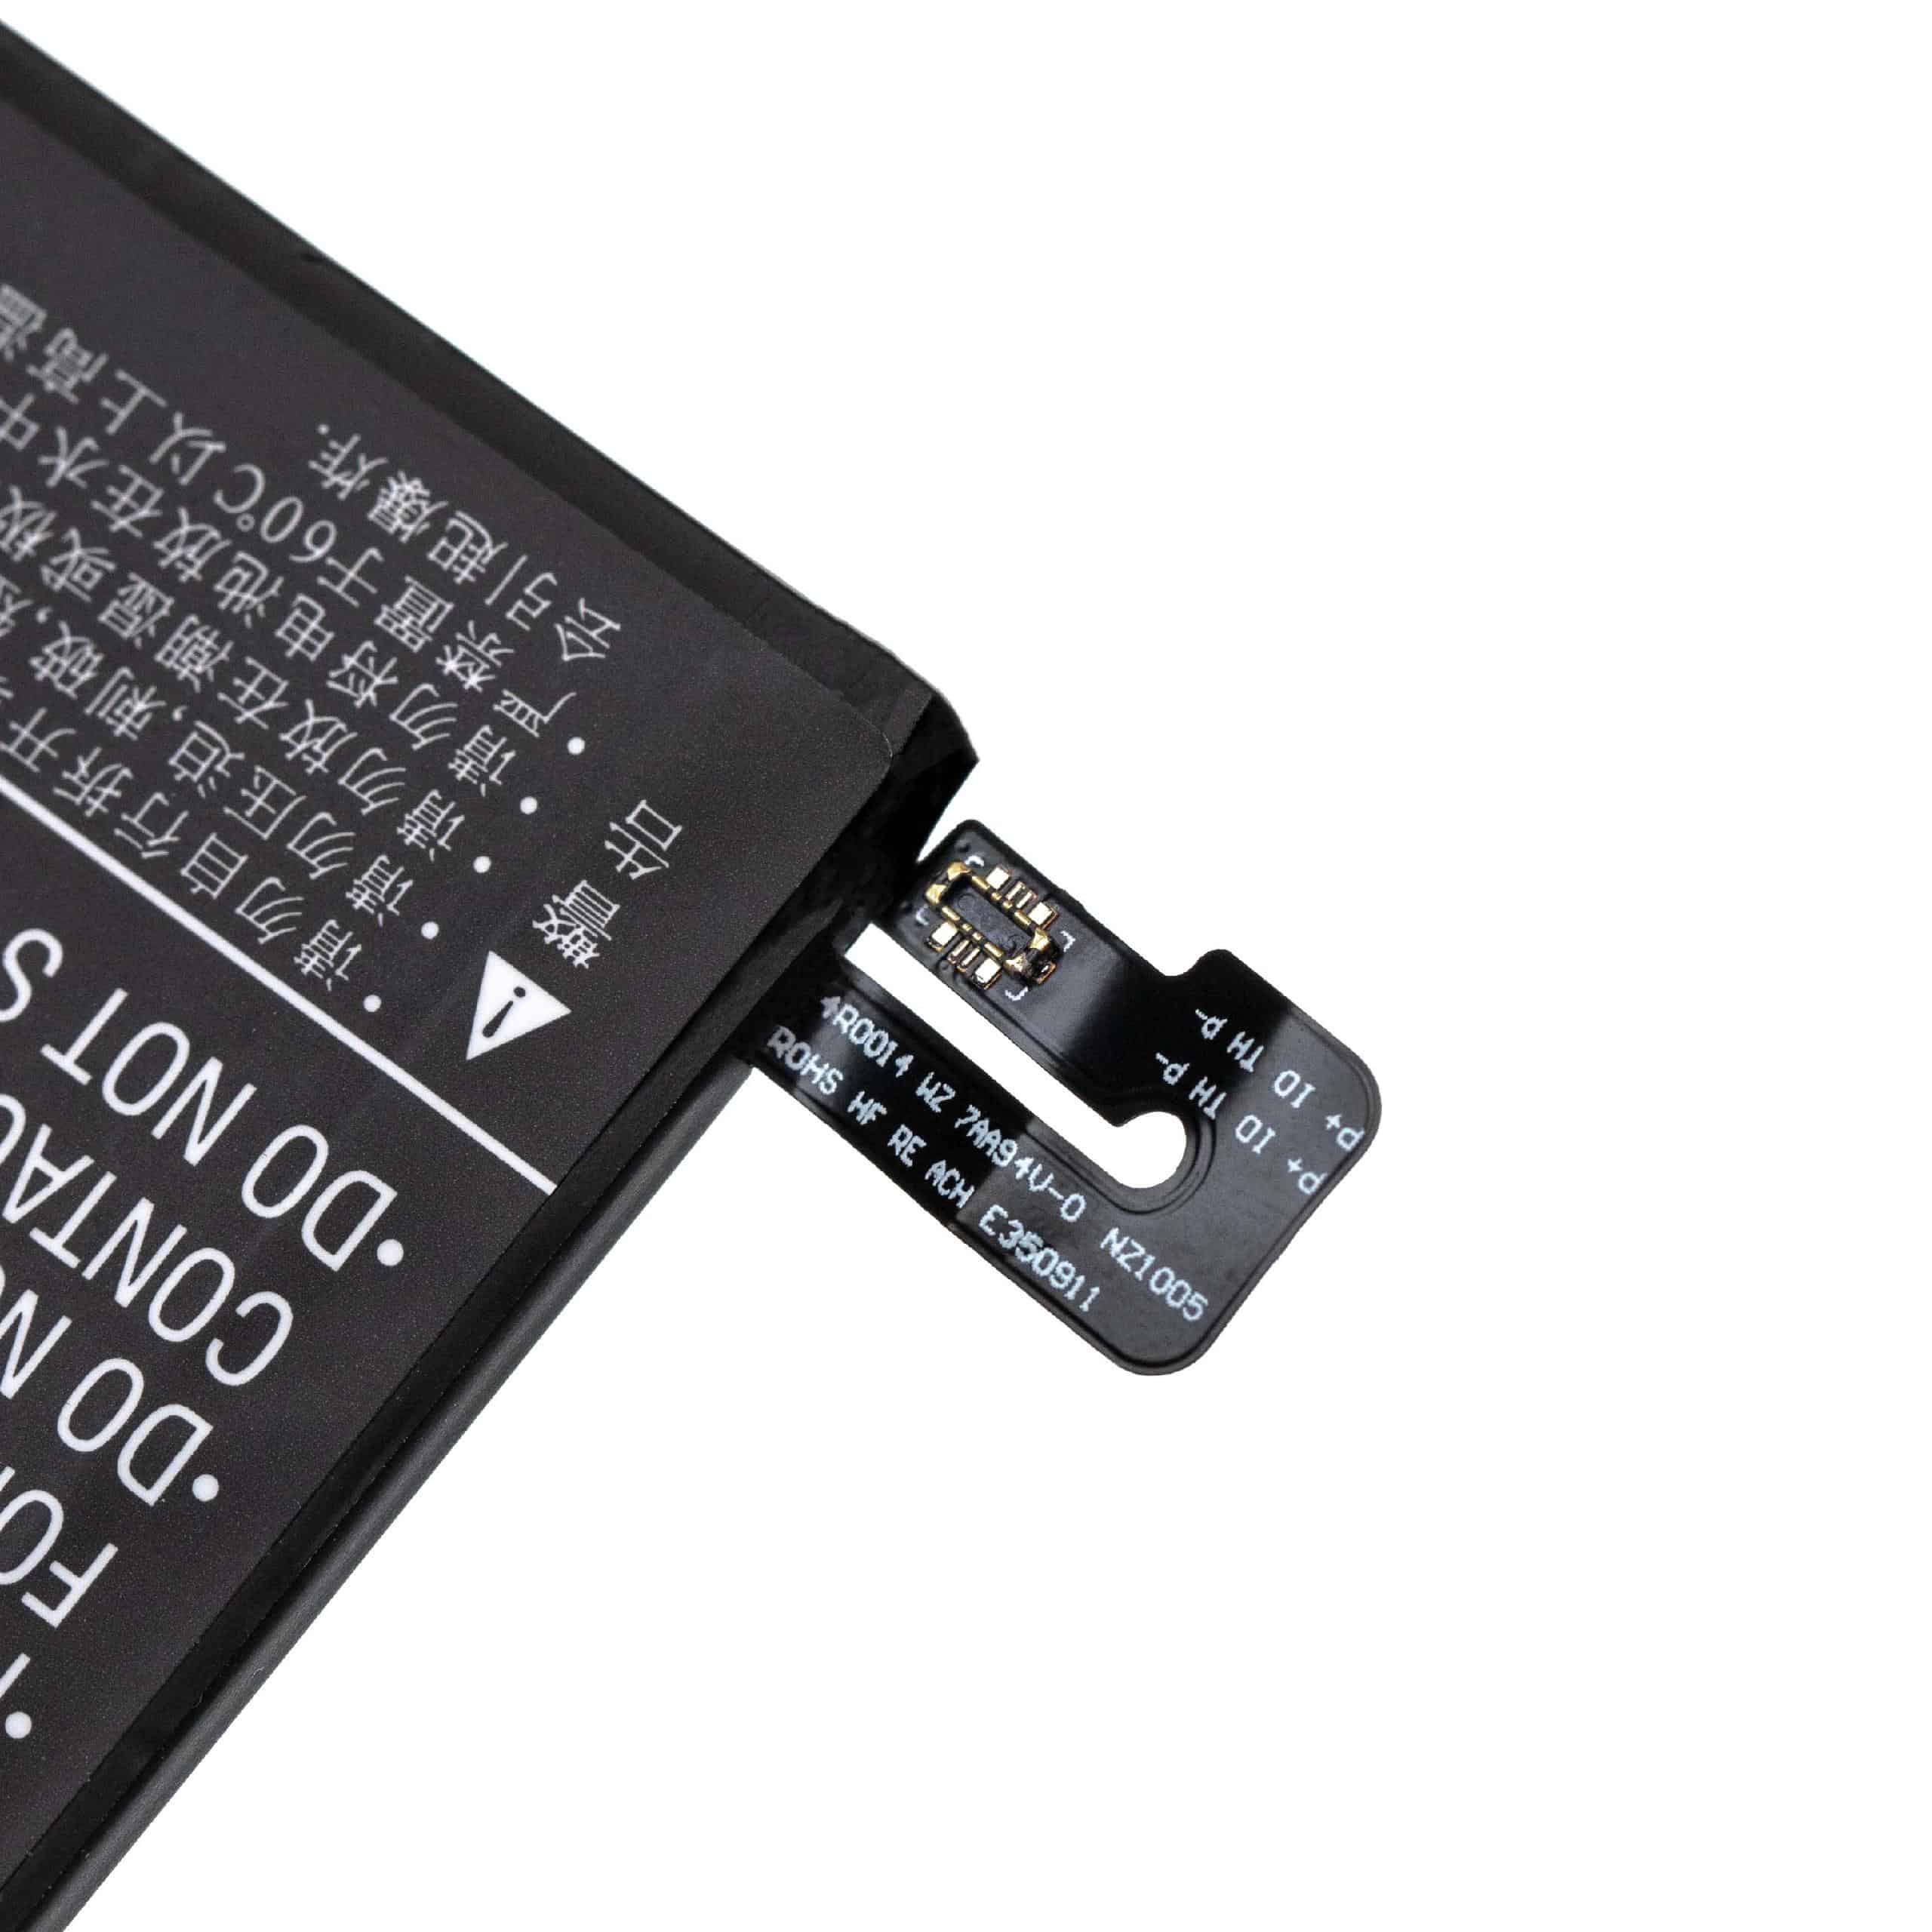 Batería reemplaza Xiaomi BN48 para móvil, teléfono Xiaomi - 3900 mAh 3,85 V Li-poli